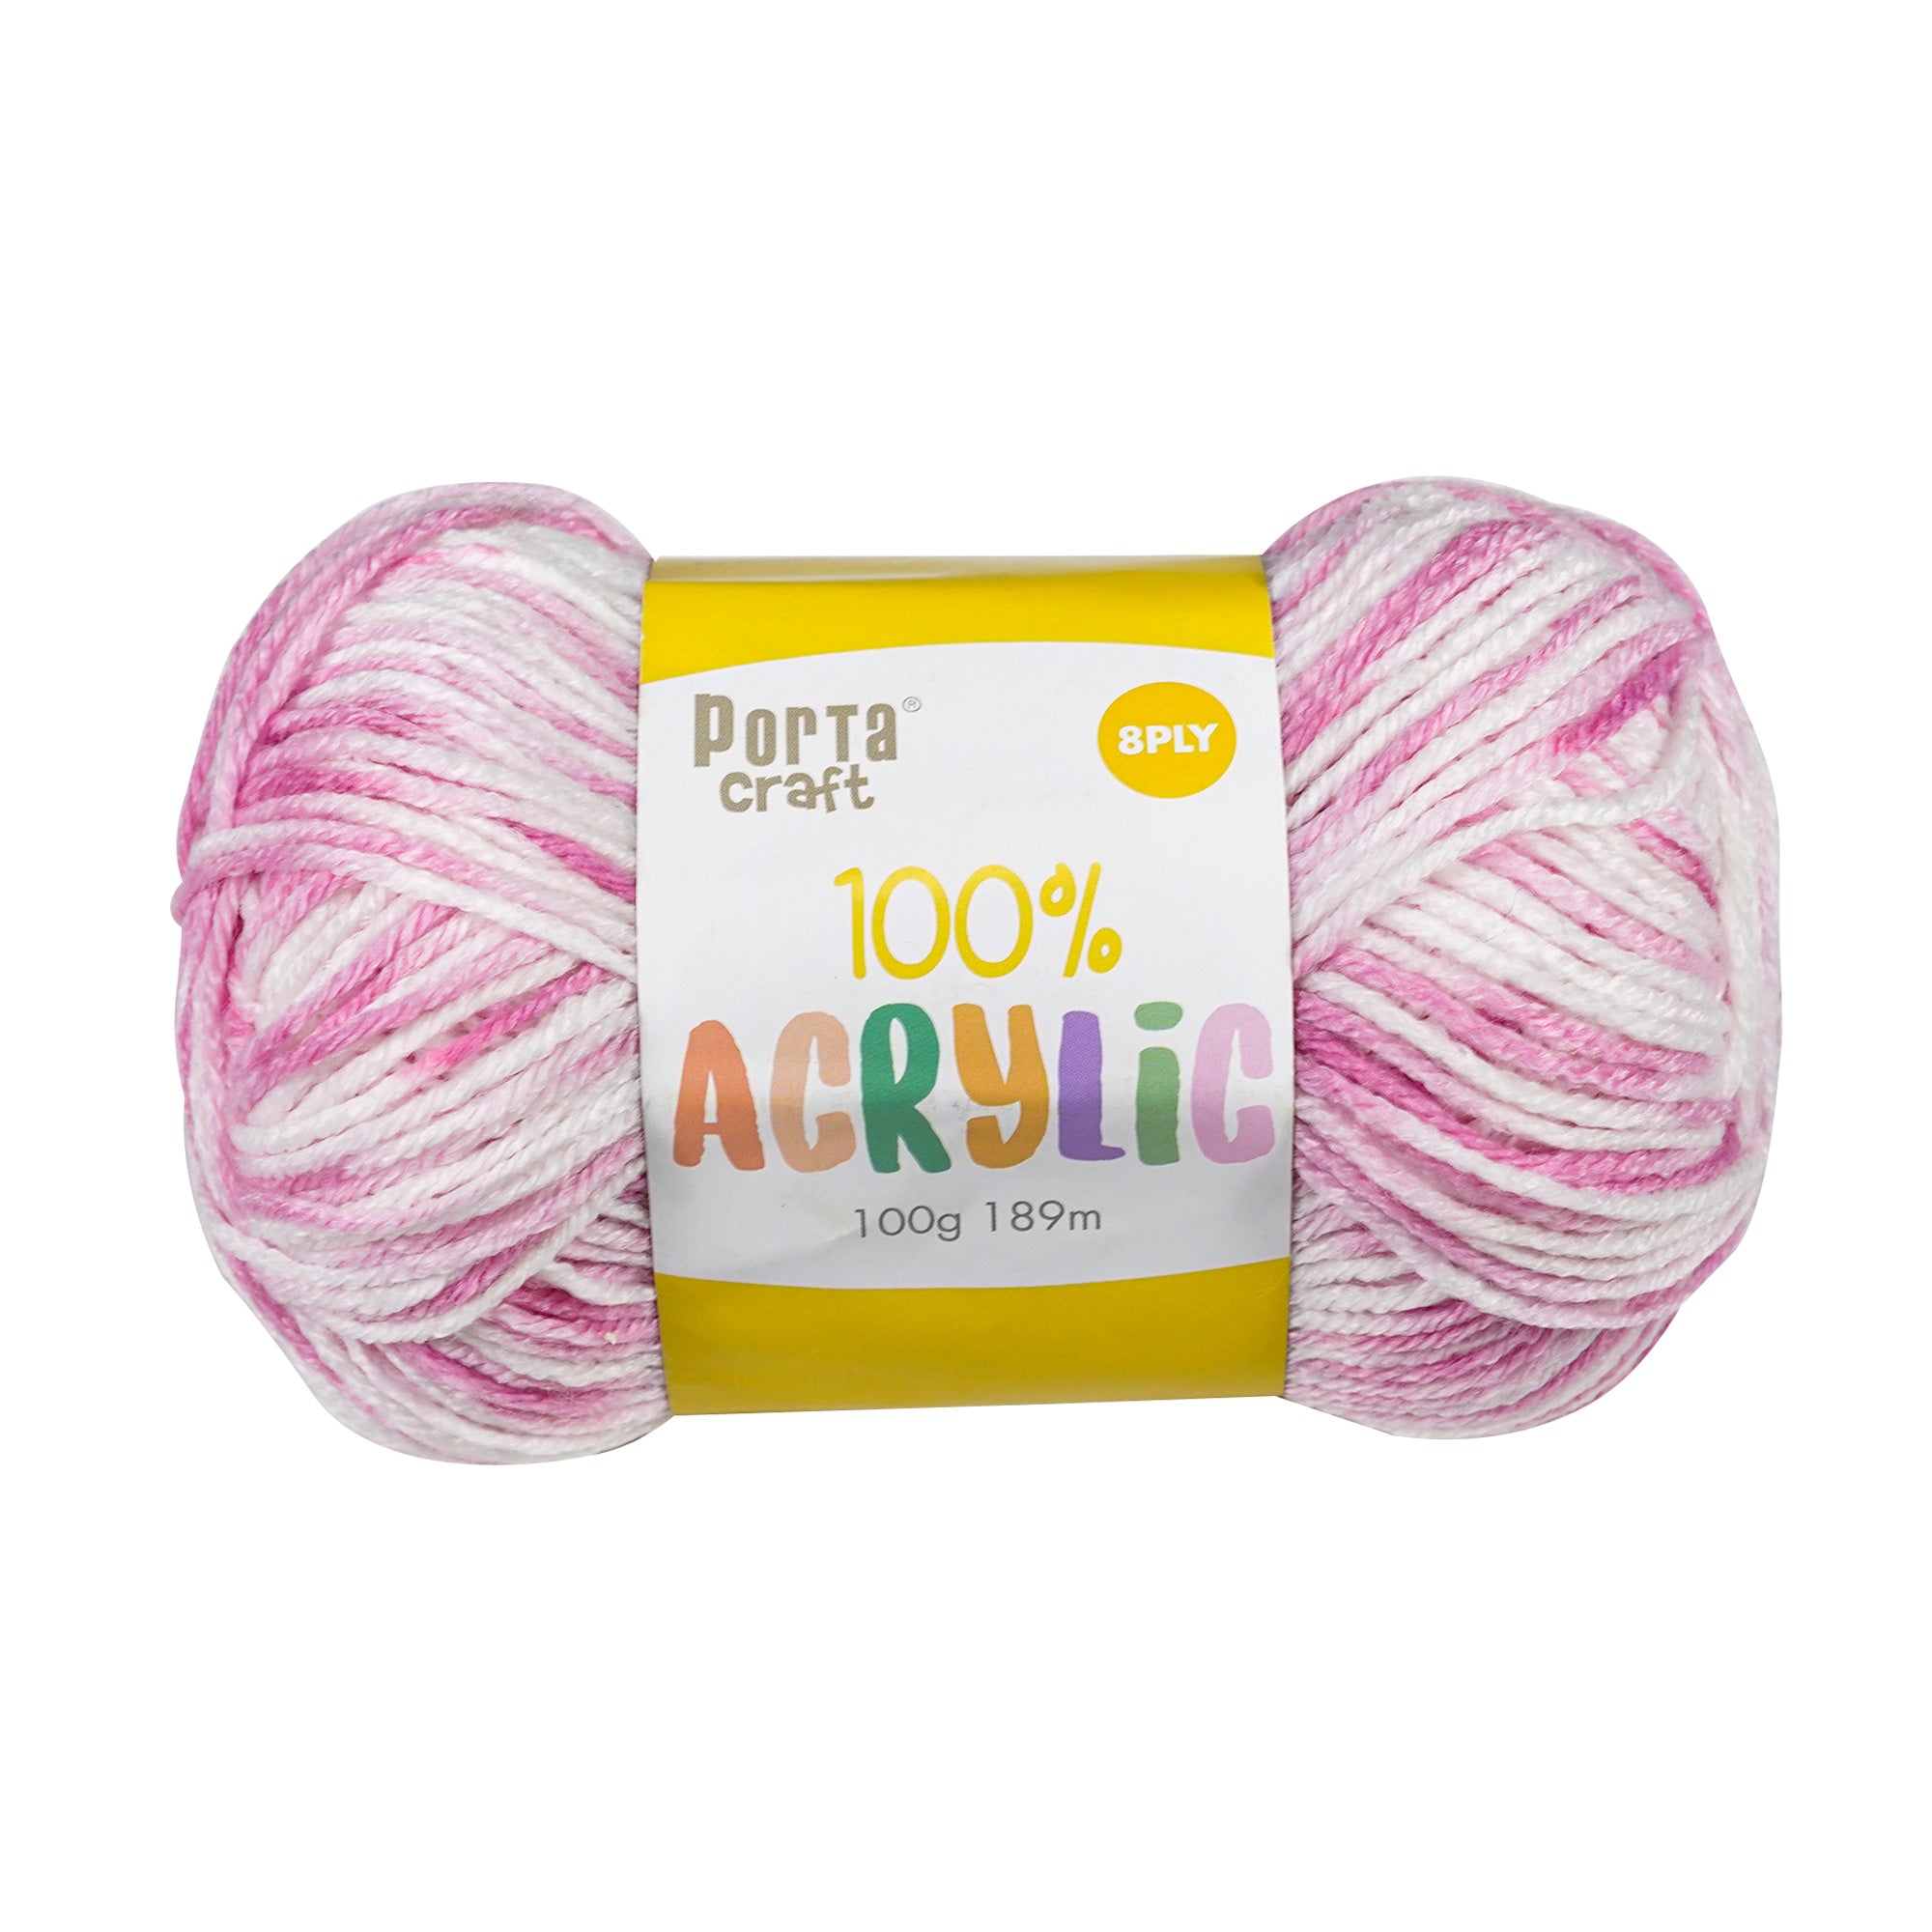 Porta Craft Acrylic Yarn 100% 100Gm 189M 8Ply Multi Pinkie Pie